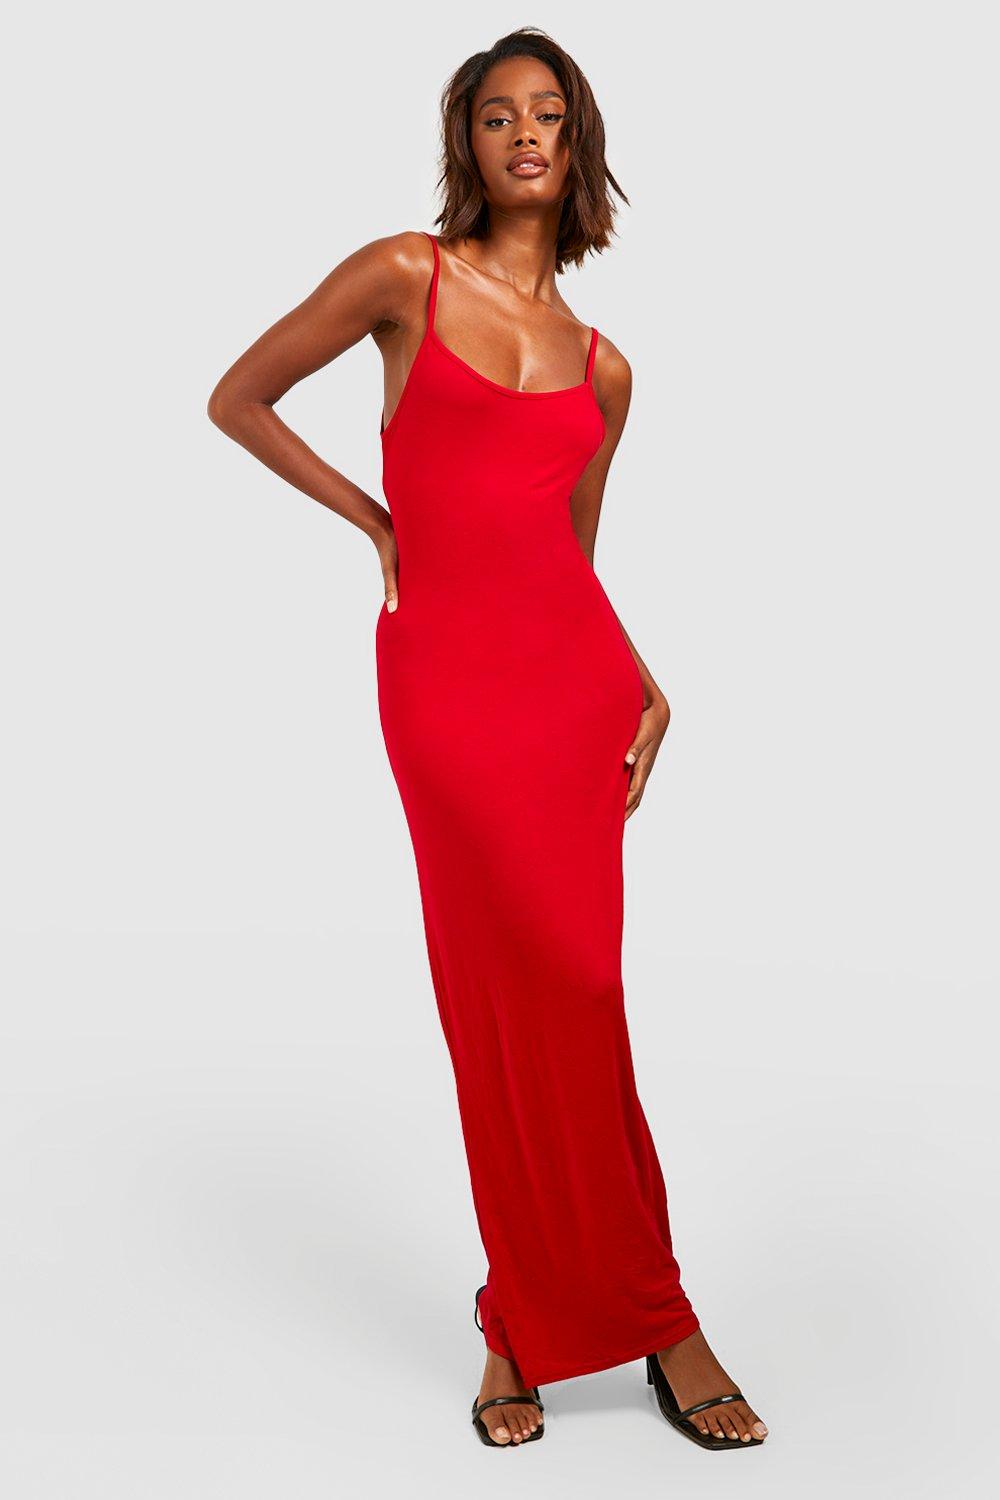 Women's Red Maxi Dress - V-neck - 3 Sizes - ApolloBox